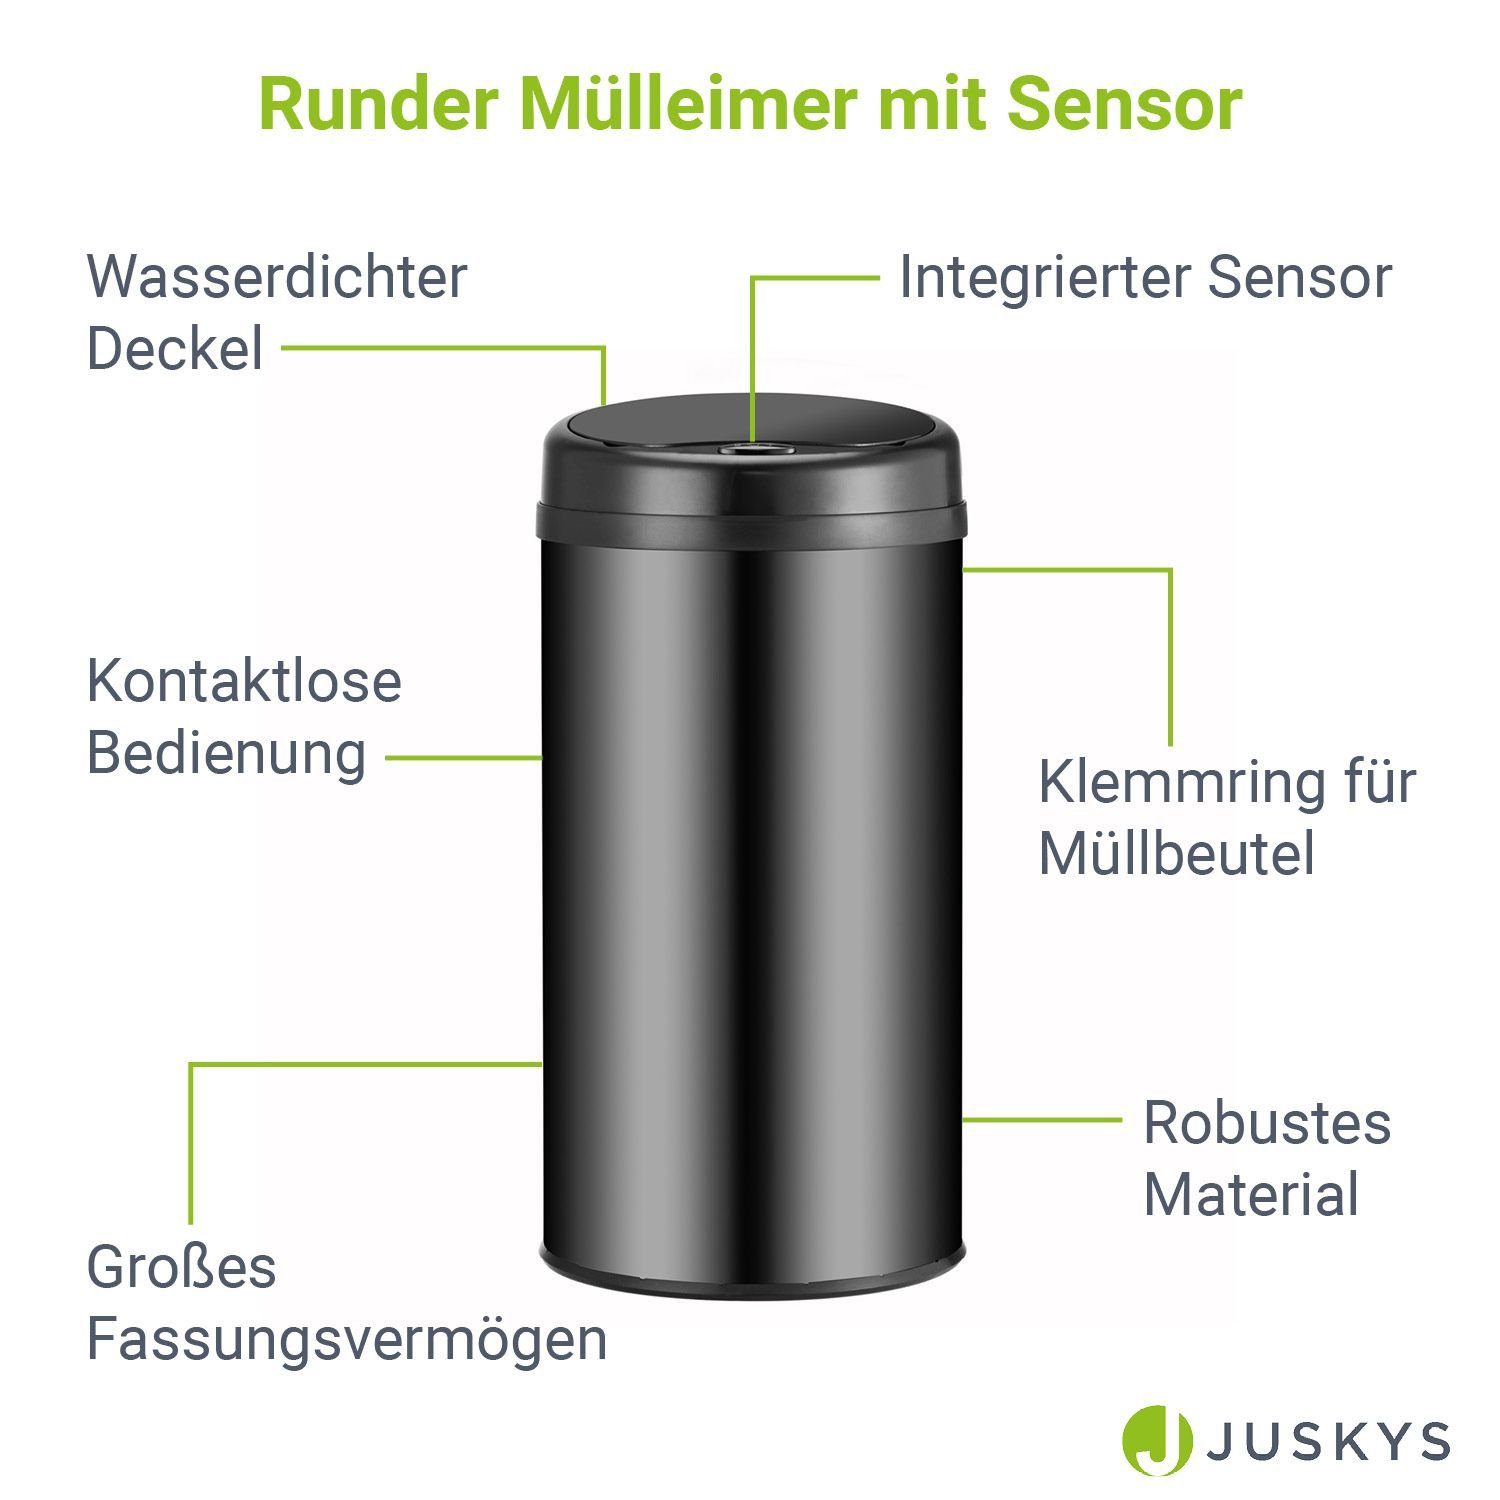 mit rostfrei L Schließen, Schwarz Mülleimer, 40 geräuscharmes Öffnen Sensor, Juskys / Volumen,